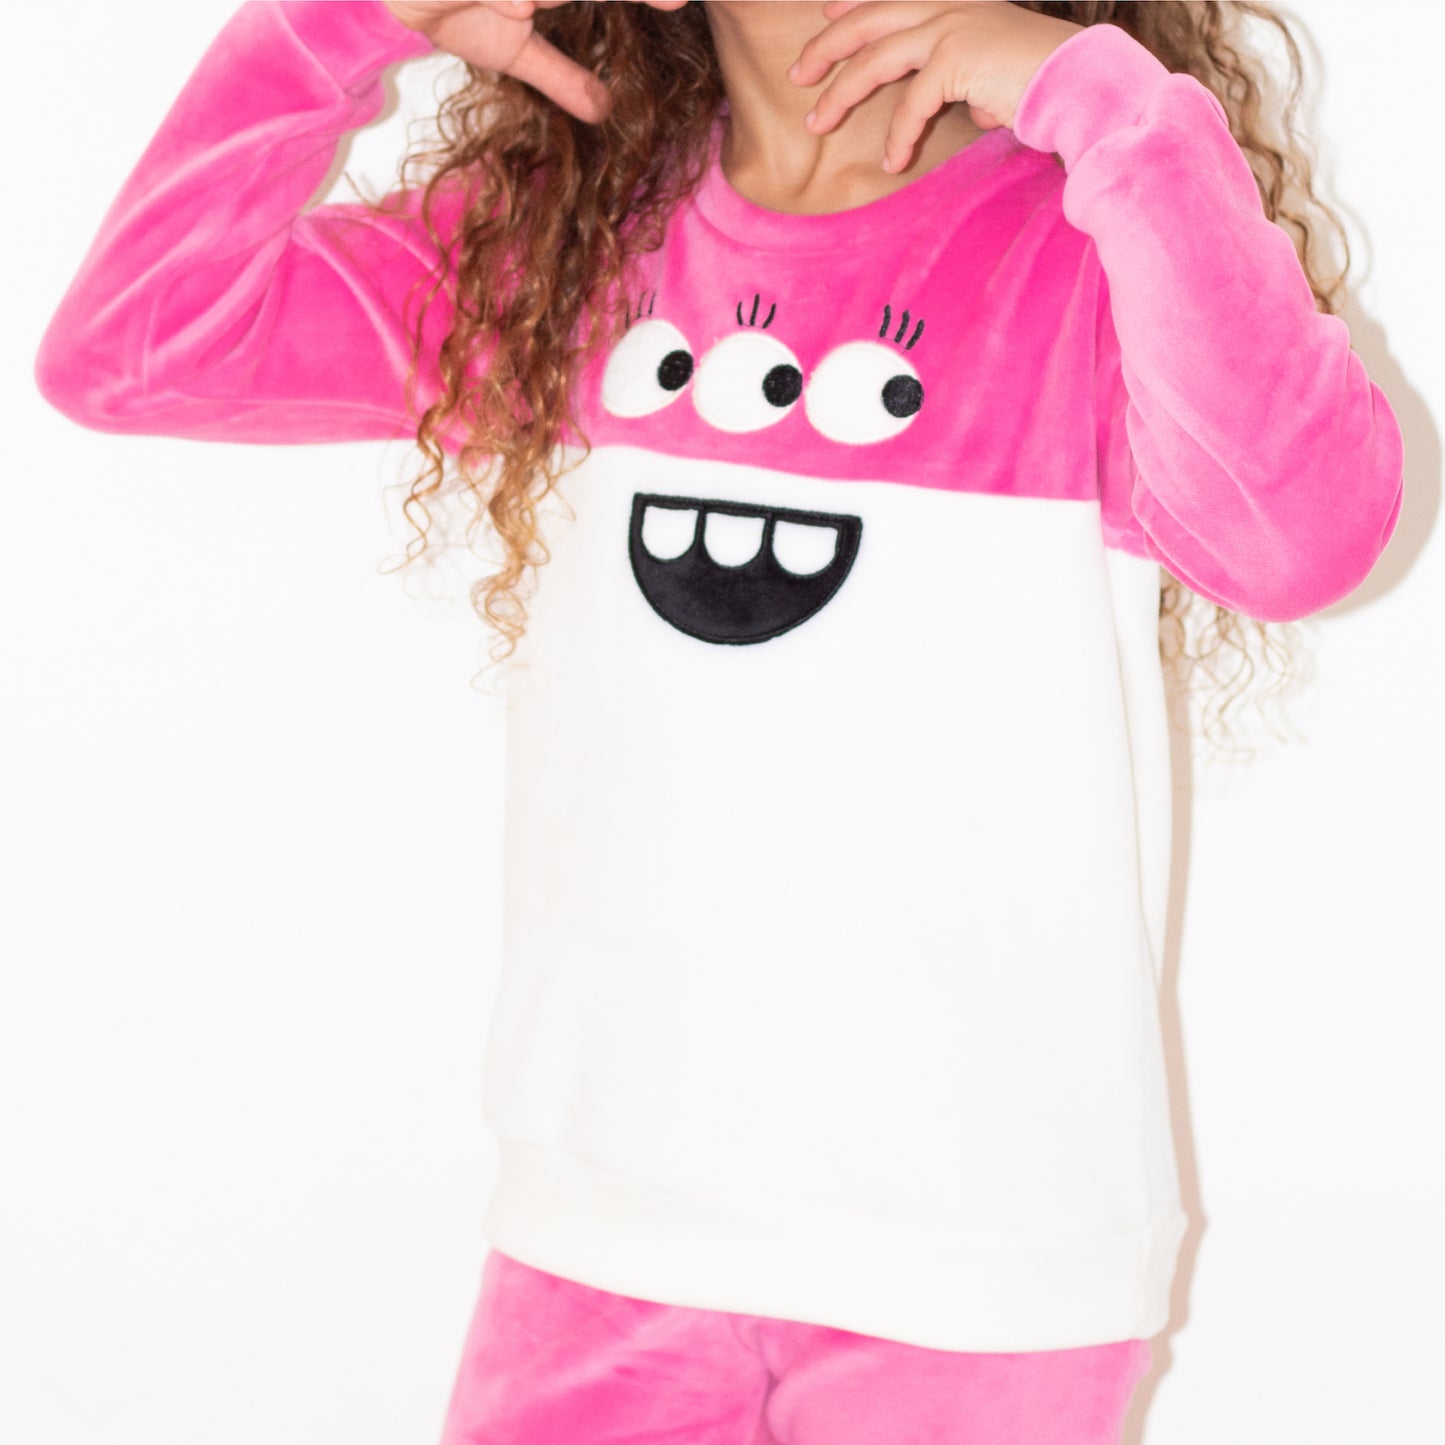 Pink 3-Eyed Monster Pajama